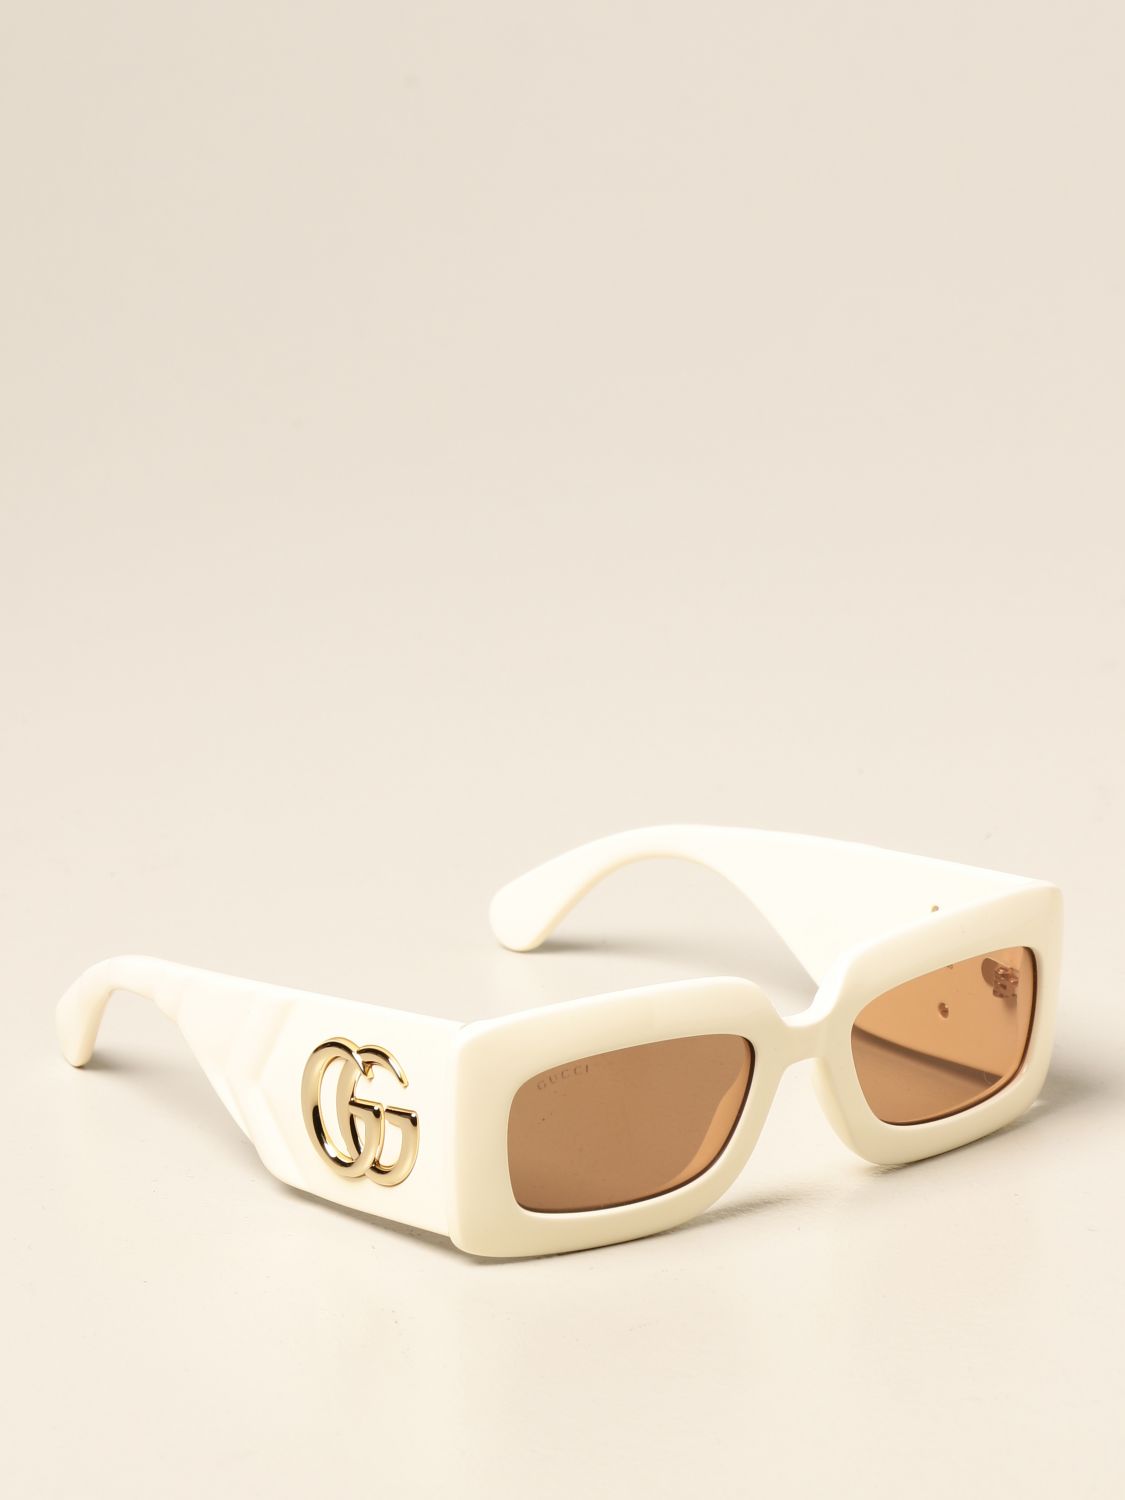 gucci sunglasses white